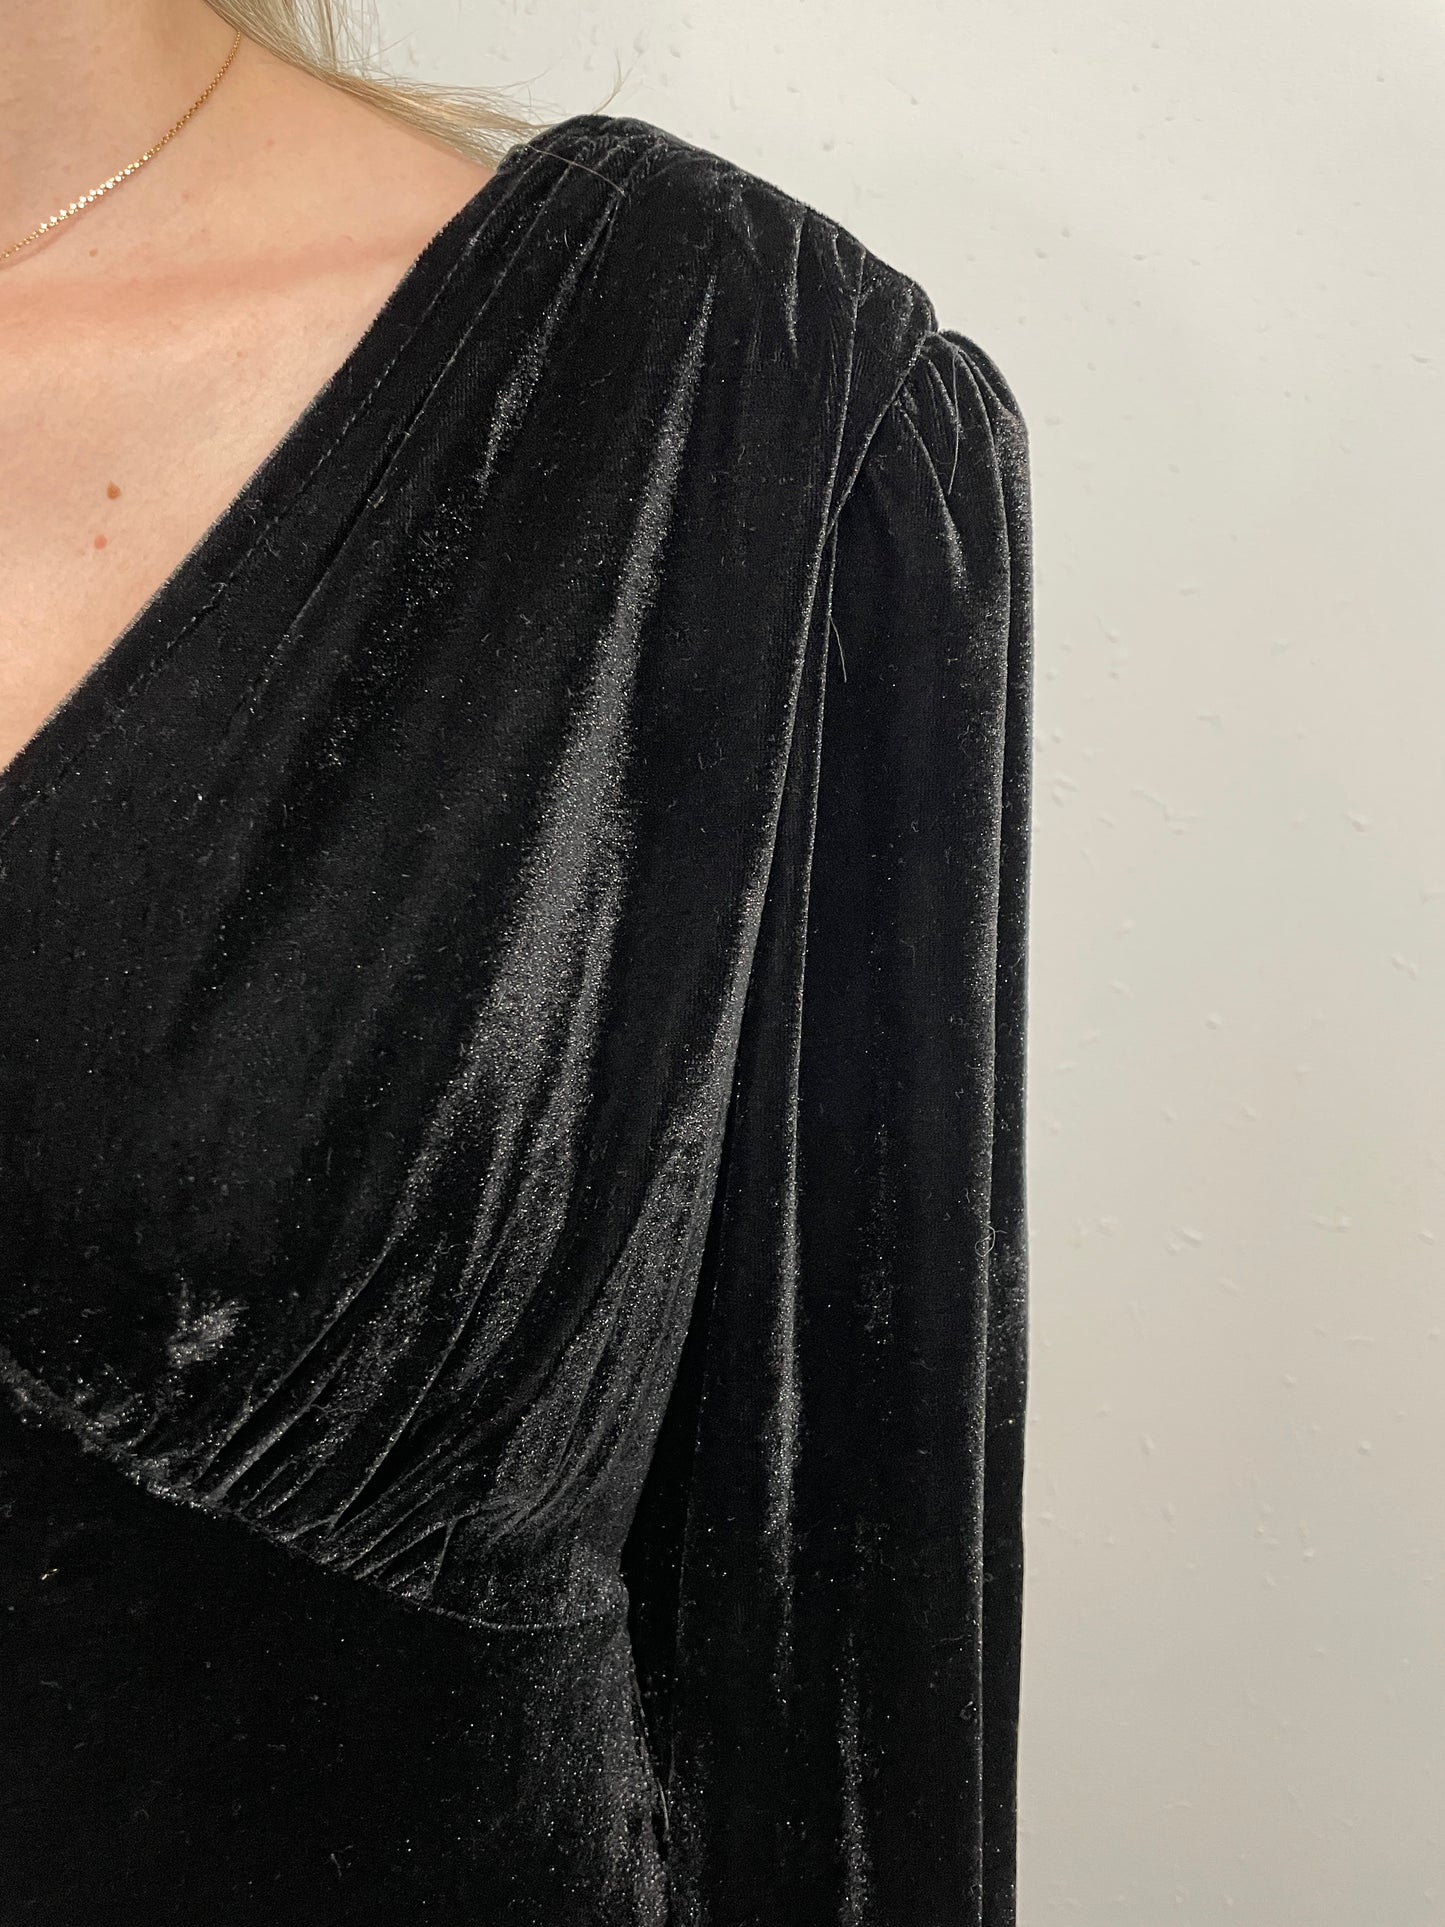 ETTA VELOUR DRESS - BLACK